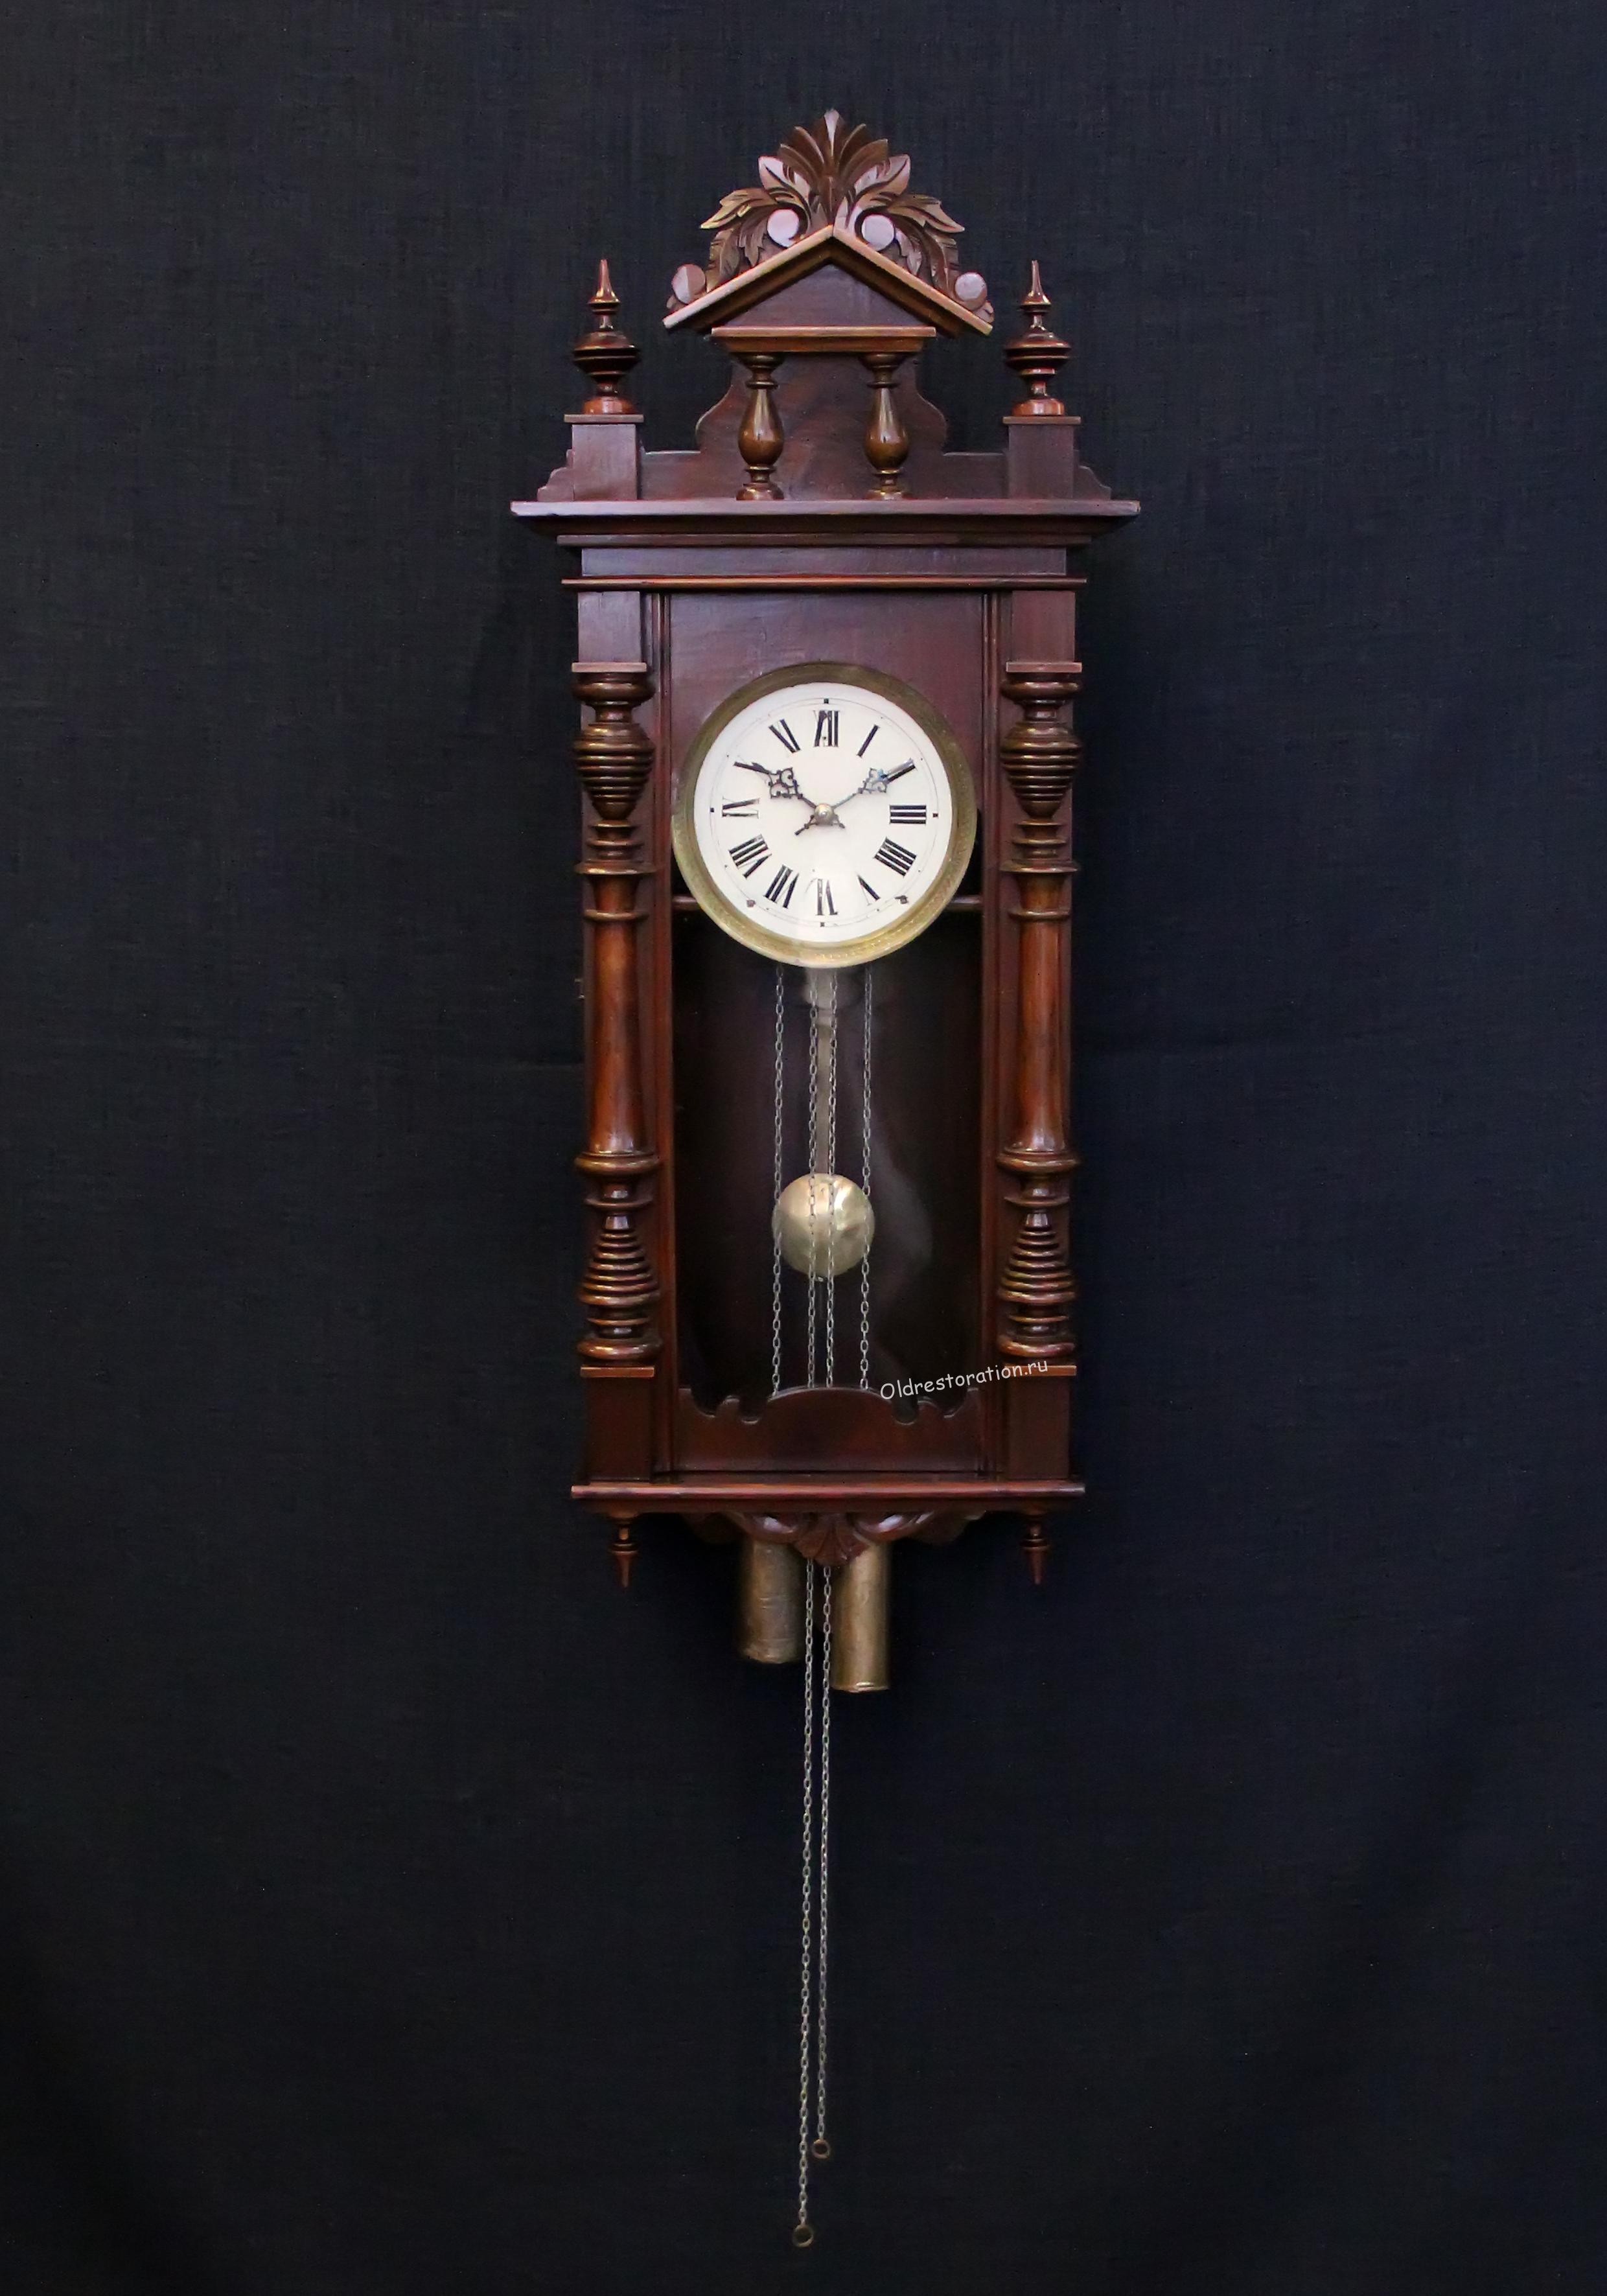 Первые маятниковые часы